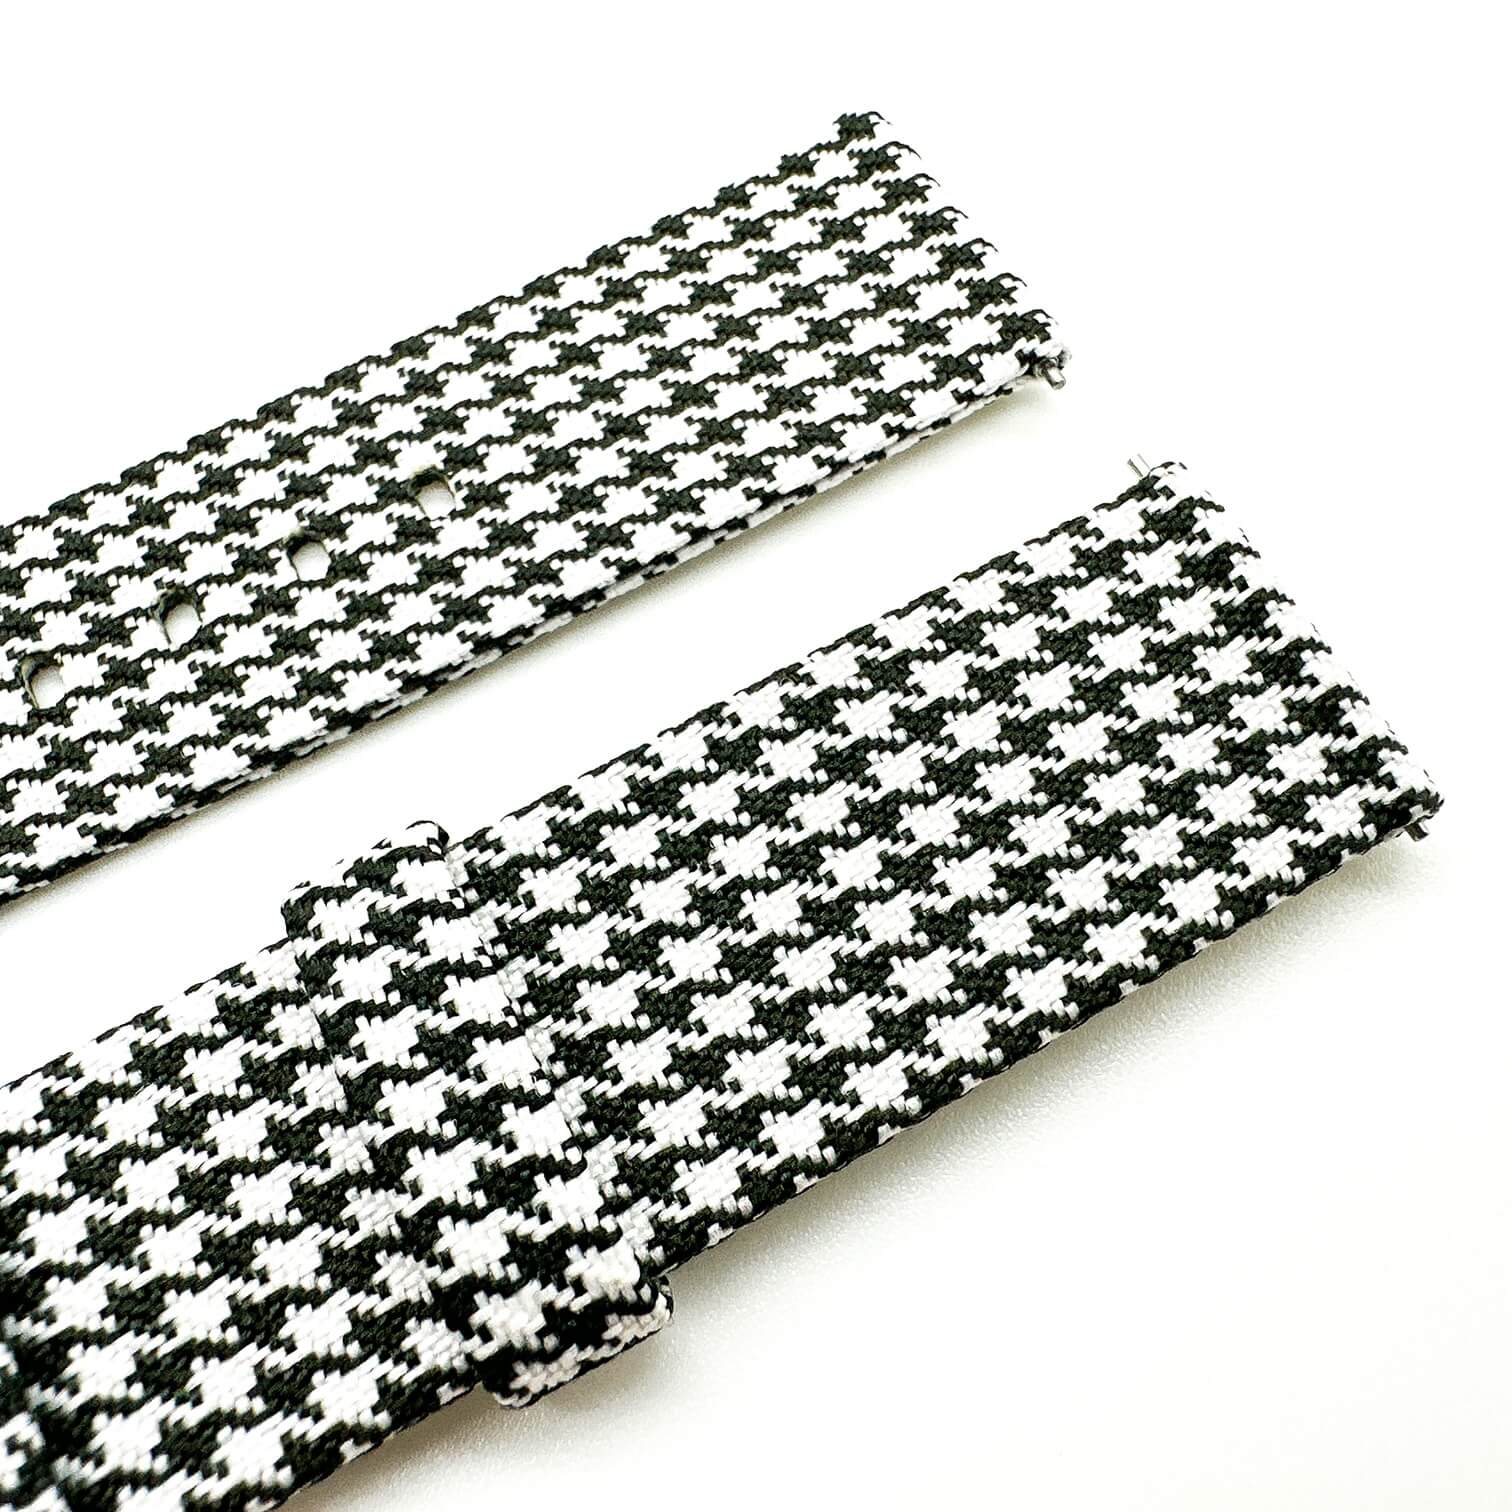 Woven Nylon Fabric Quick Release Watch Strap Black White 3